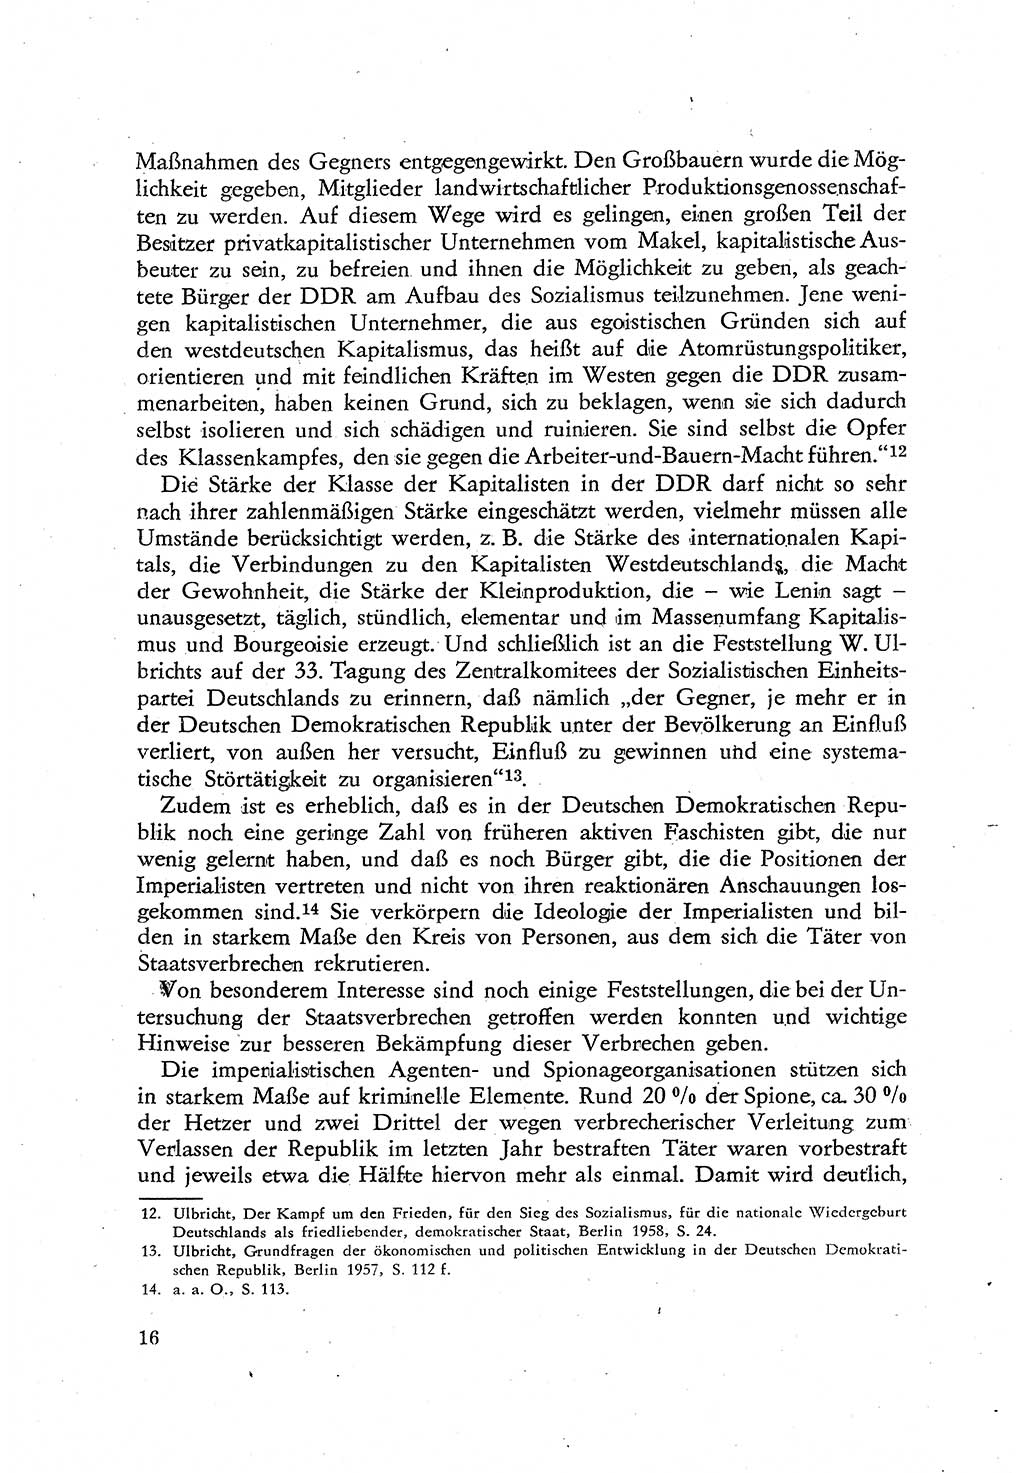 Beiträge zum Strafrecht [Deutsche Demokratische Republik (DDR)], Staatsverbrechen 1959, Seite 16 (Beitr. Strafr. DDR St.-Verbr. 1959, S. 16)